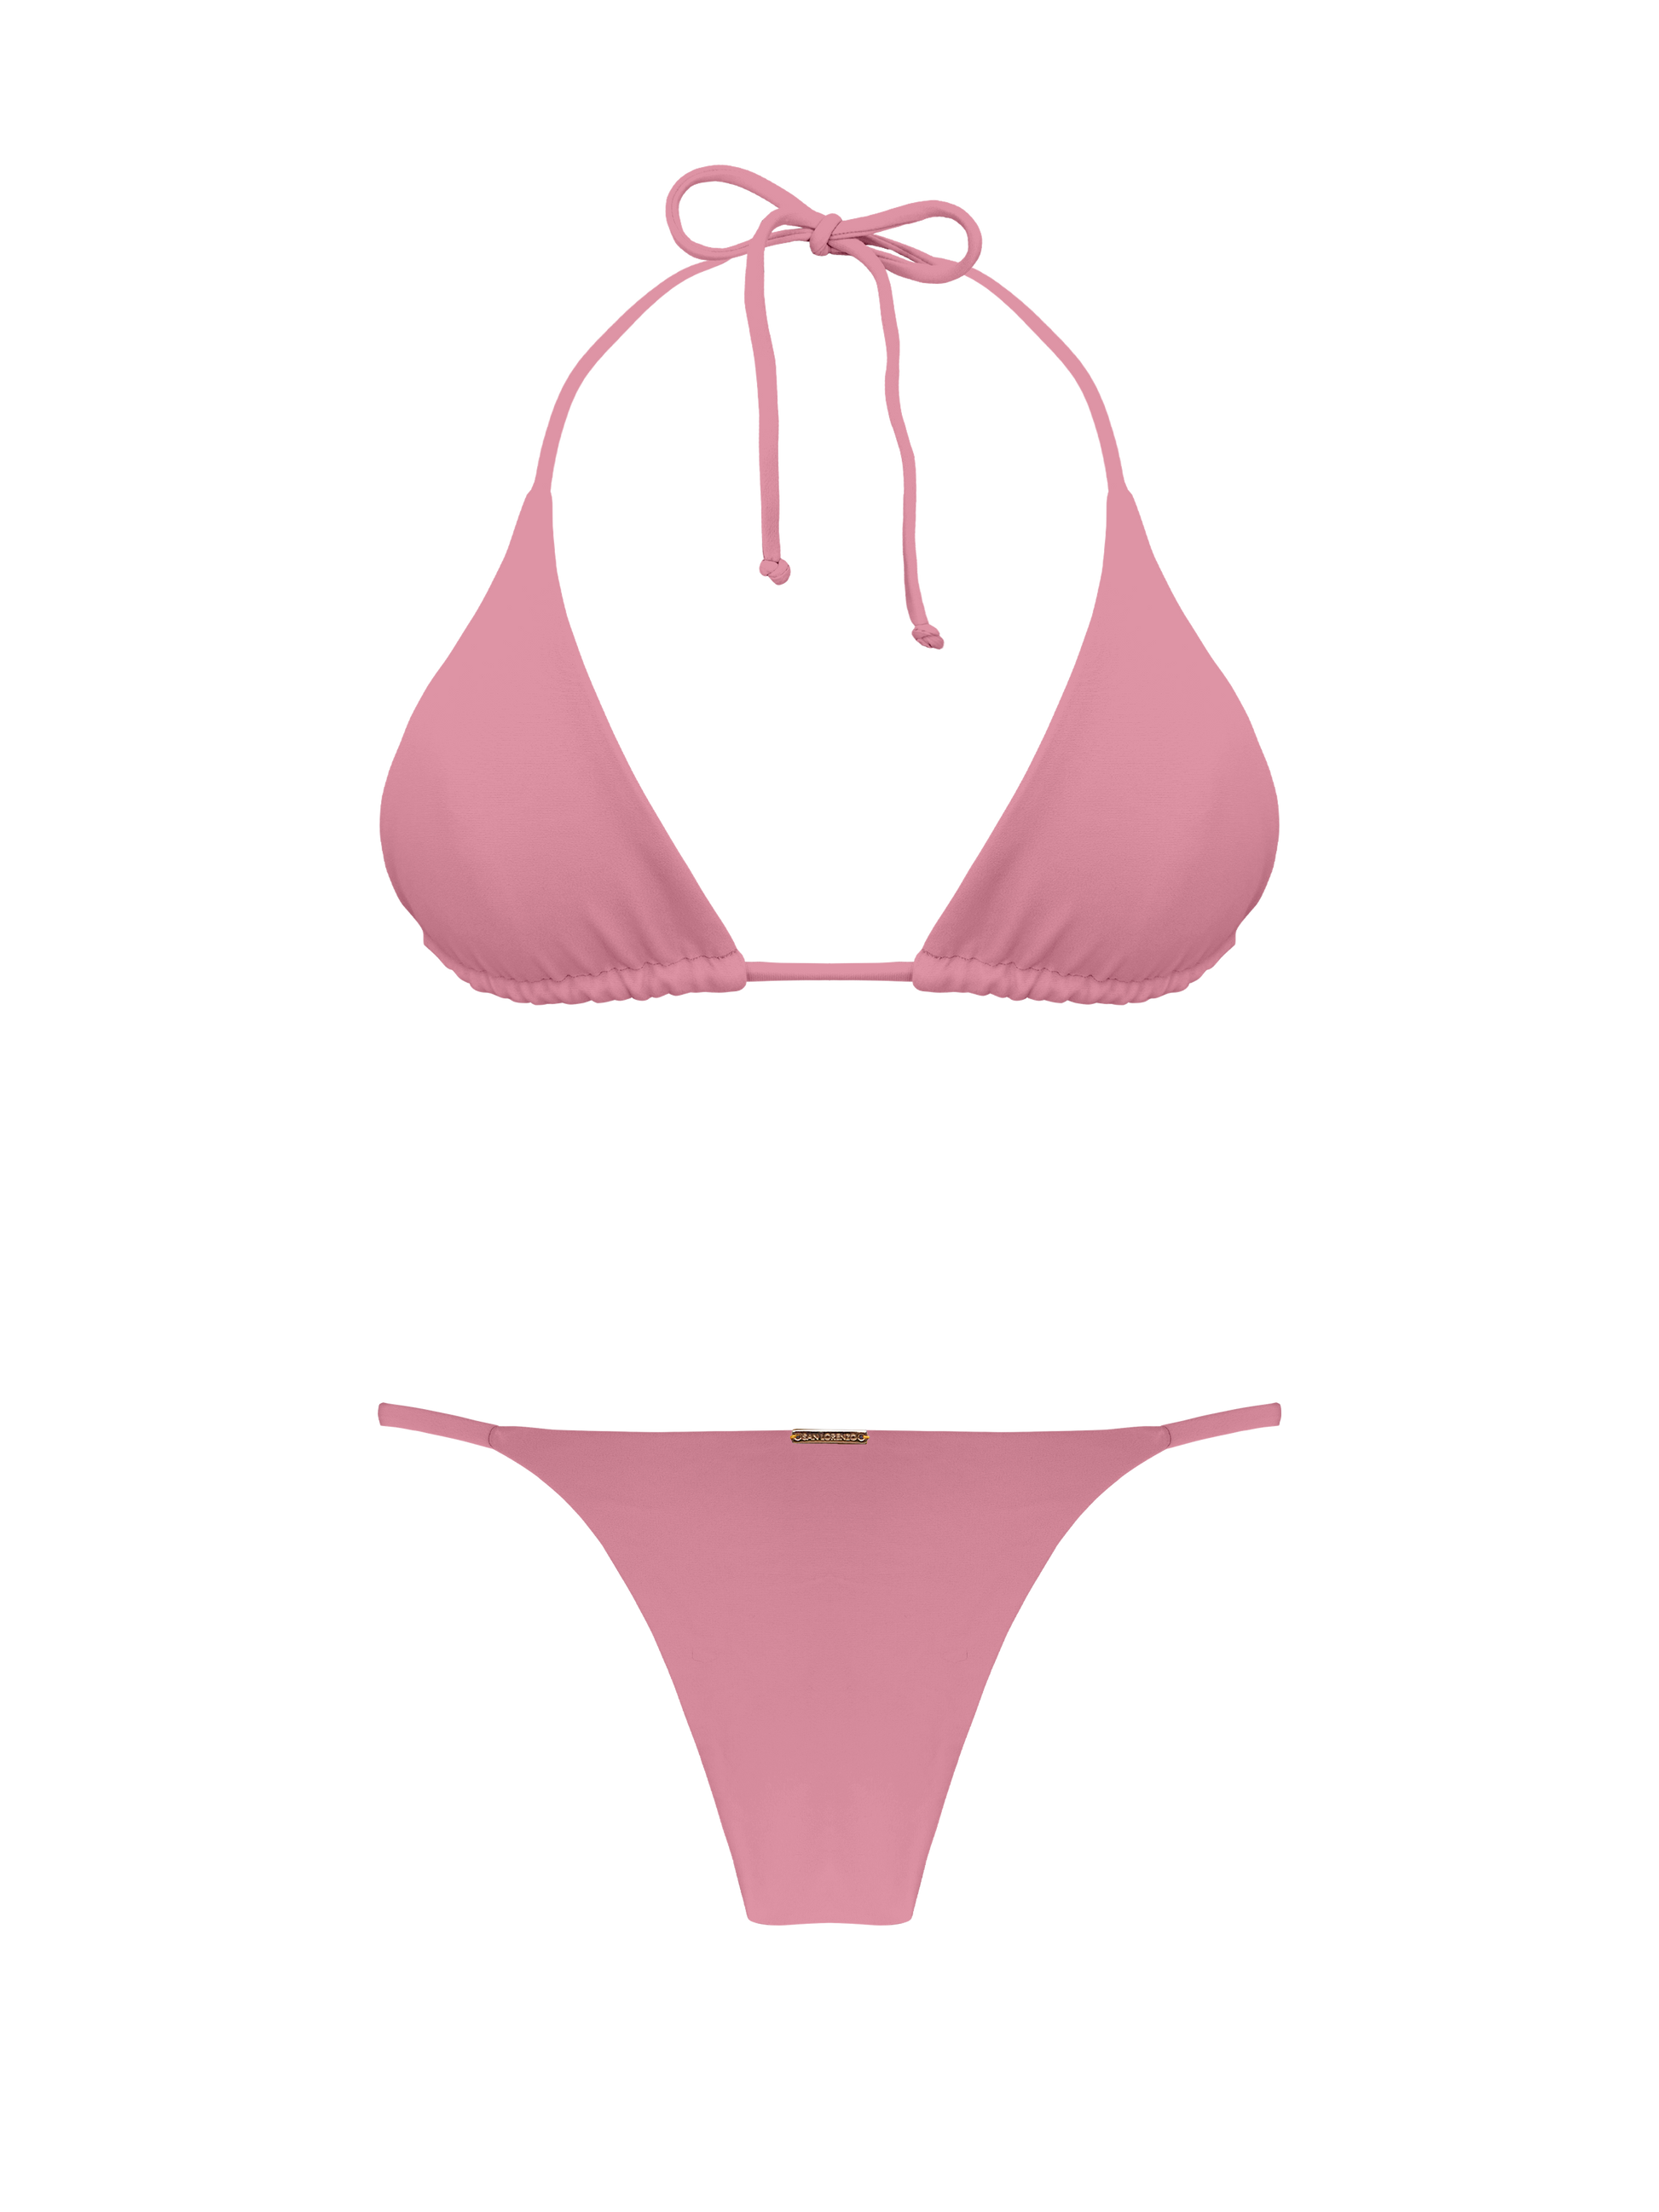 Top Classic X-Small San Pink Coral San Colletion Triangle Bikini Lorenzo – Lorenzo By Top Bikinis